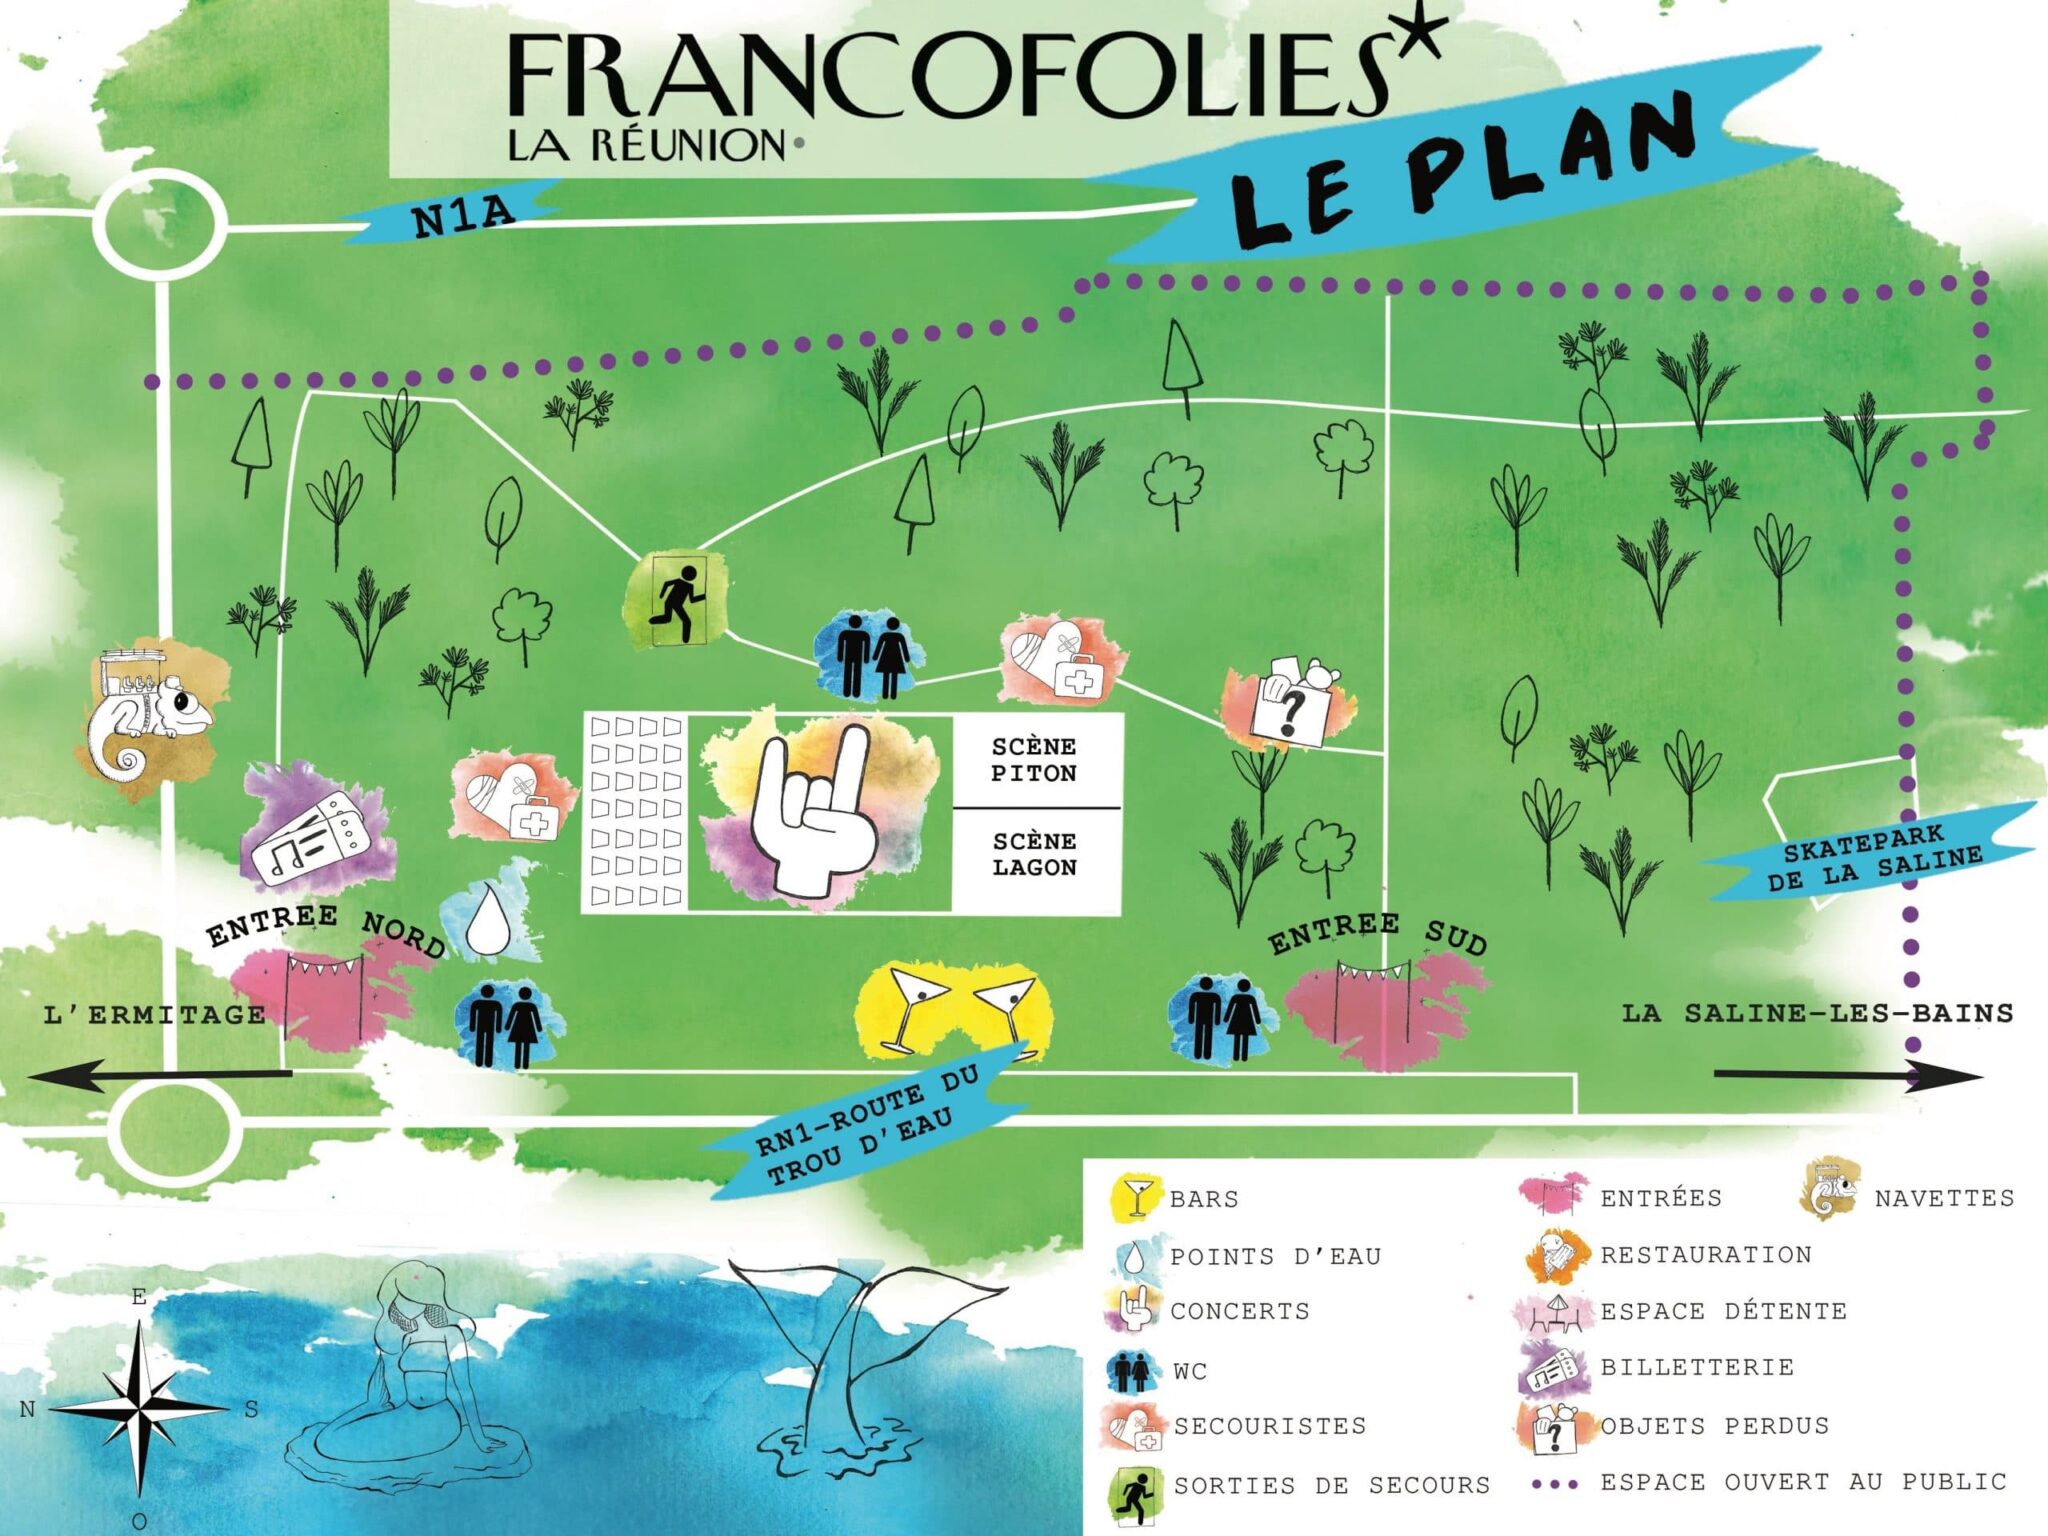 Les Francofolies débarquent à Saint-Paul ! Rendez-vous du 29 septembre au 2 octobre à La Saline-les-Bains !